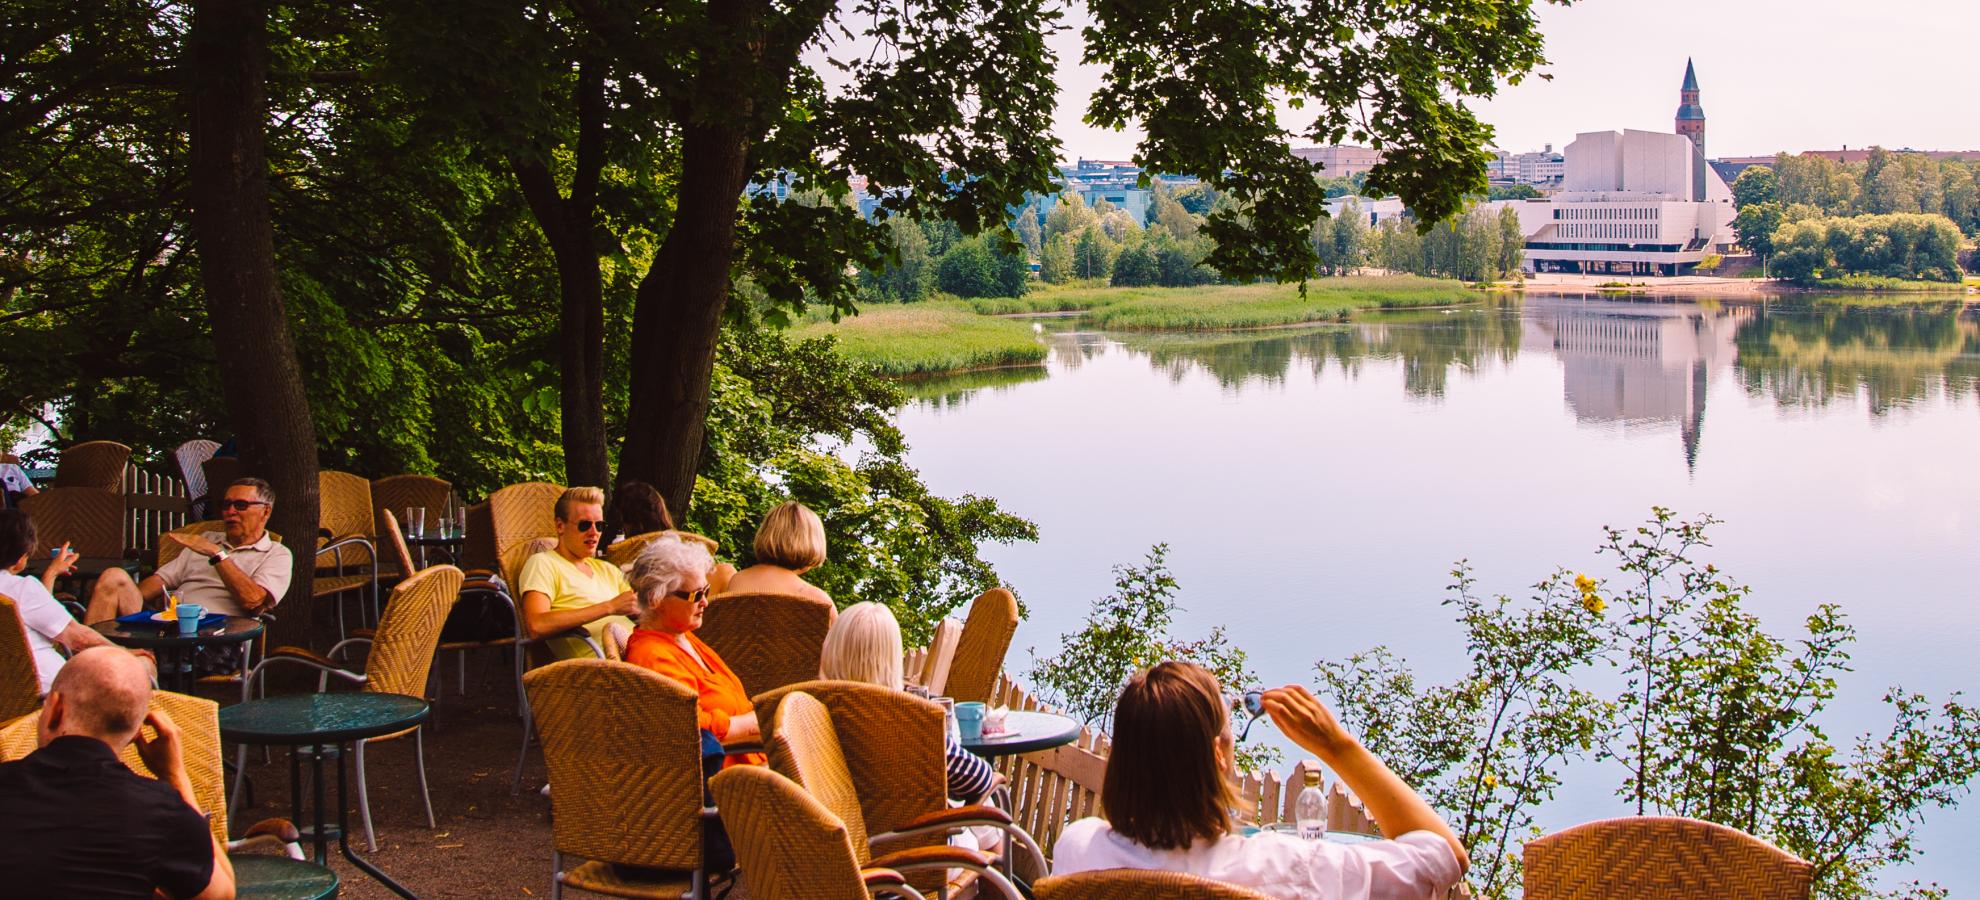 People sit and enjoy the view from Sininen Huvila summer café's outdoor terrace overlooking Töölönlahti Bay.